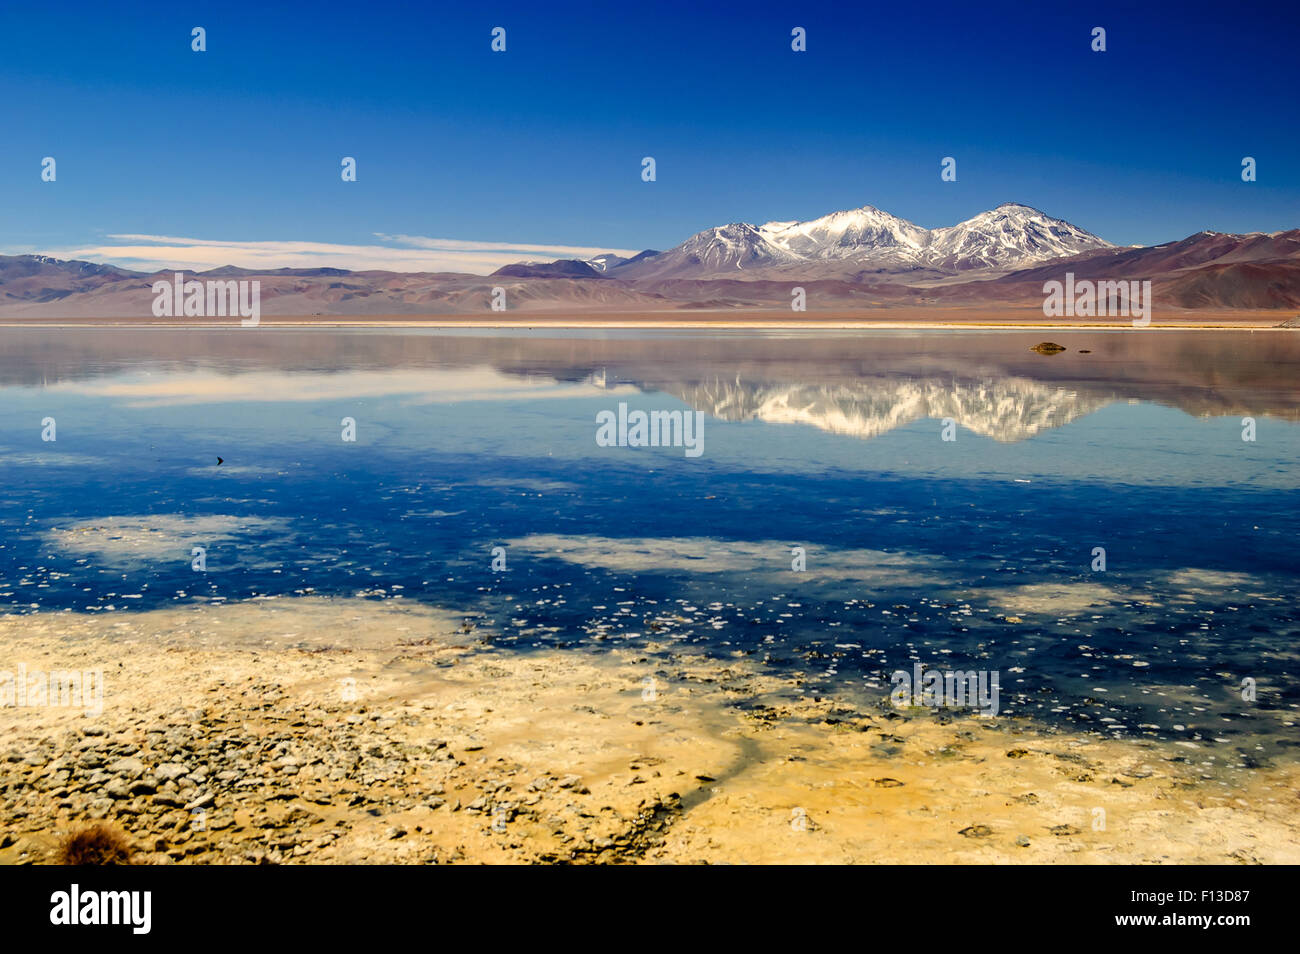 Lagoon, Maricunga, Atacama Desert, Chile Stock Photo